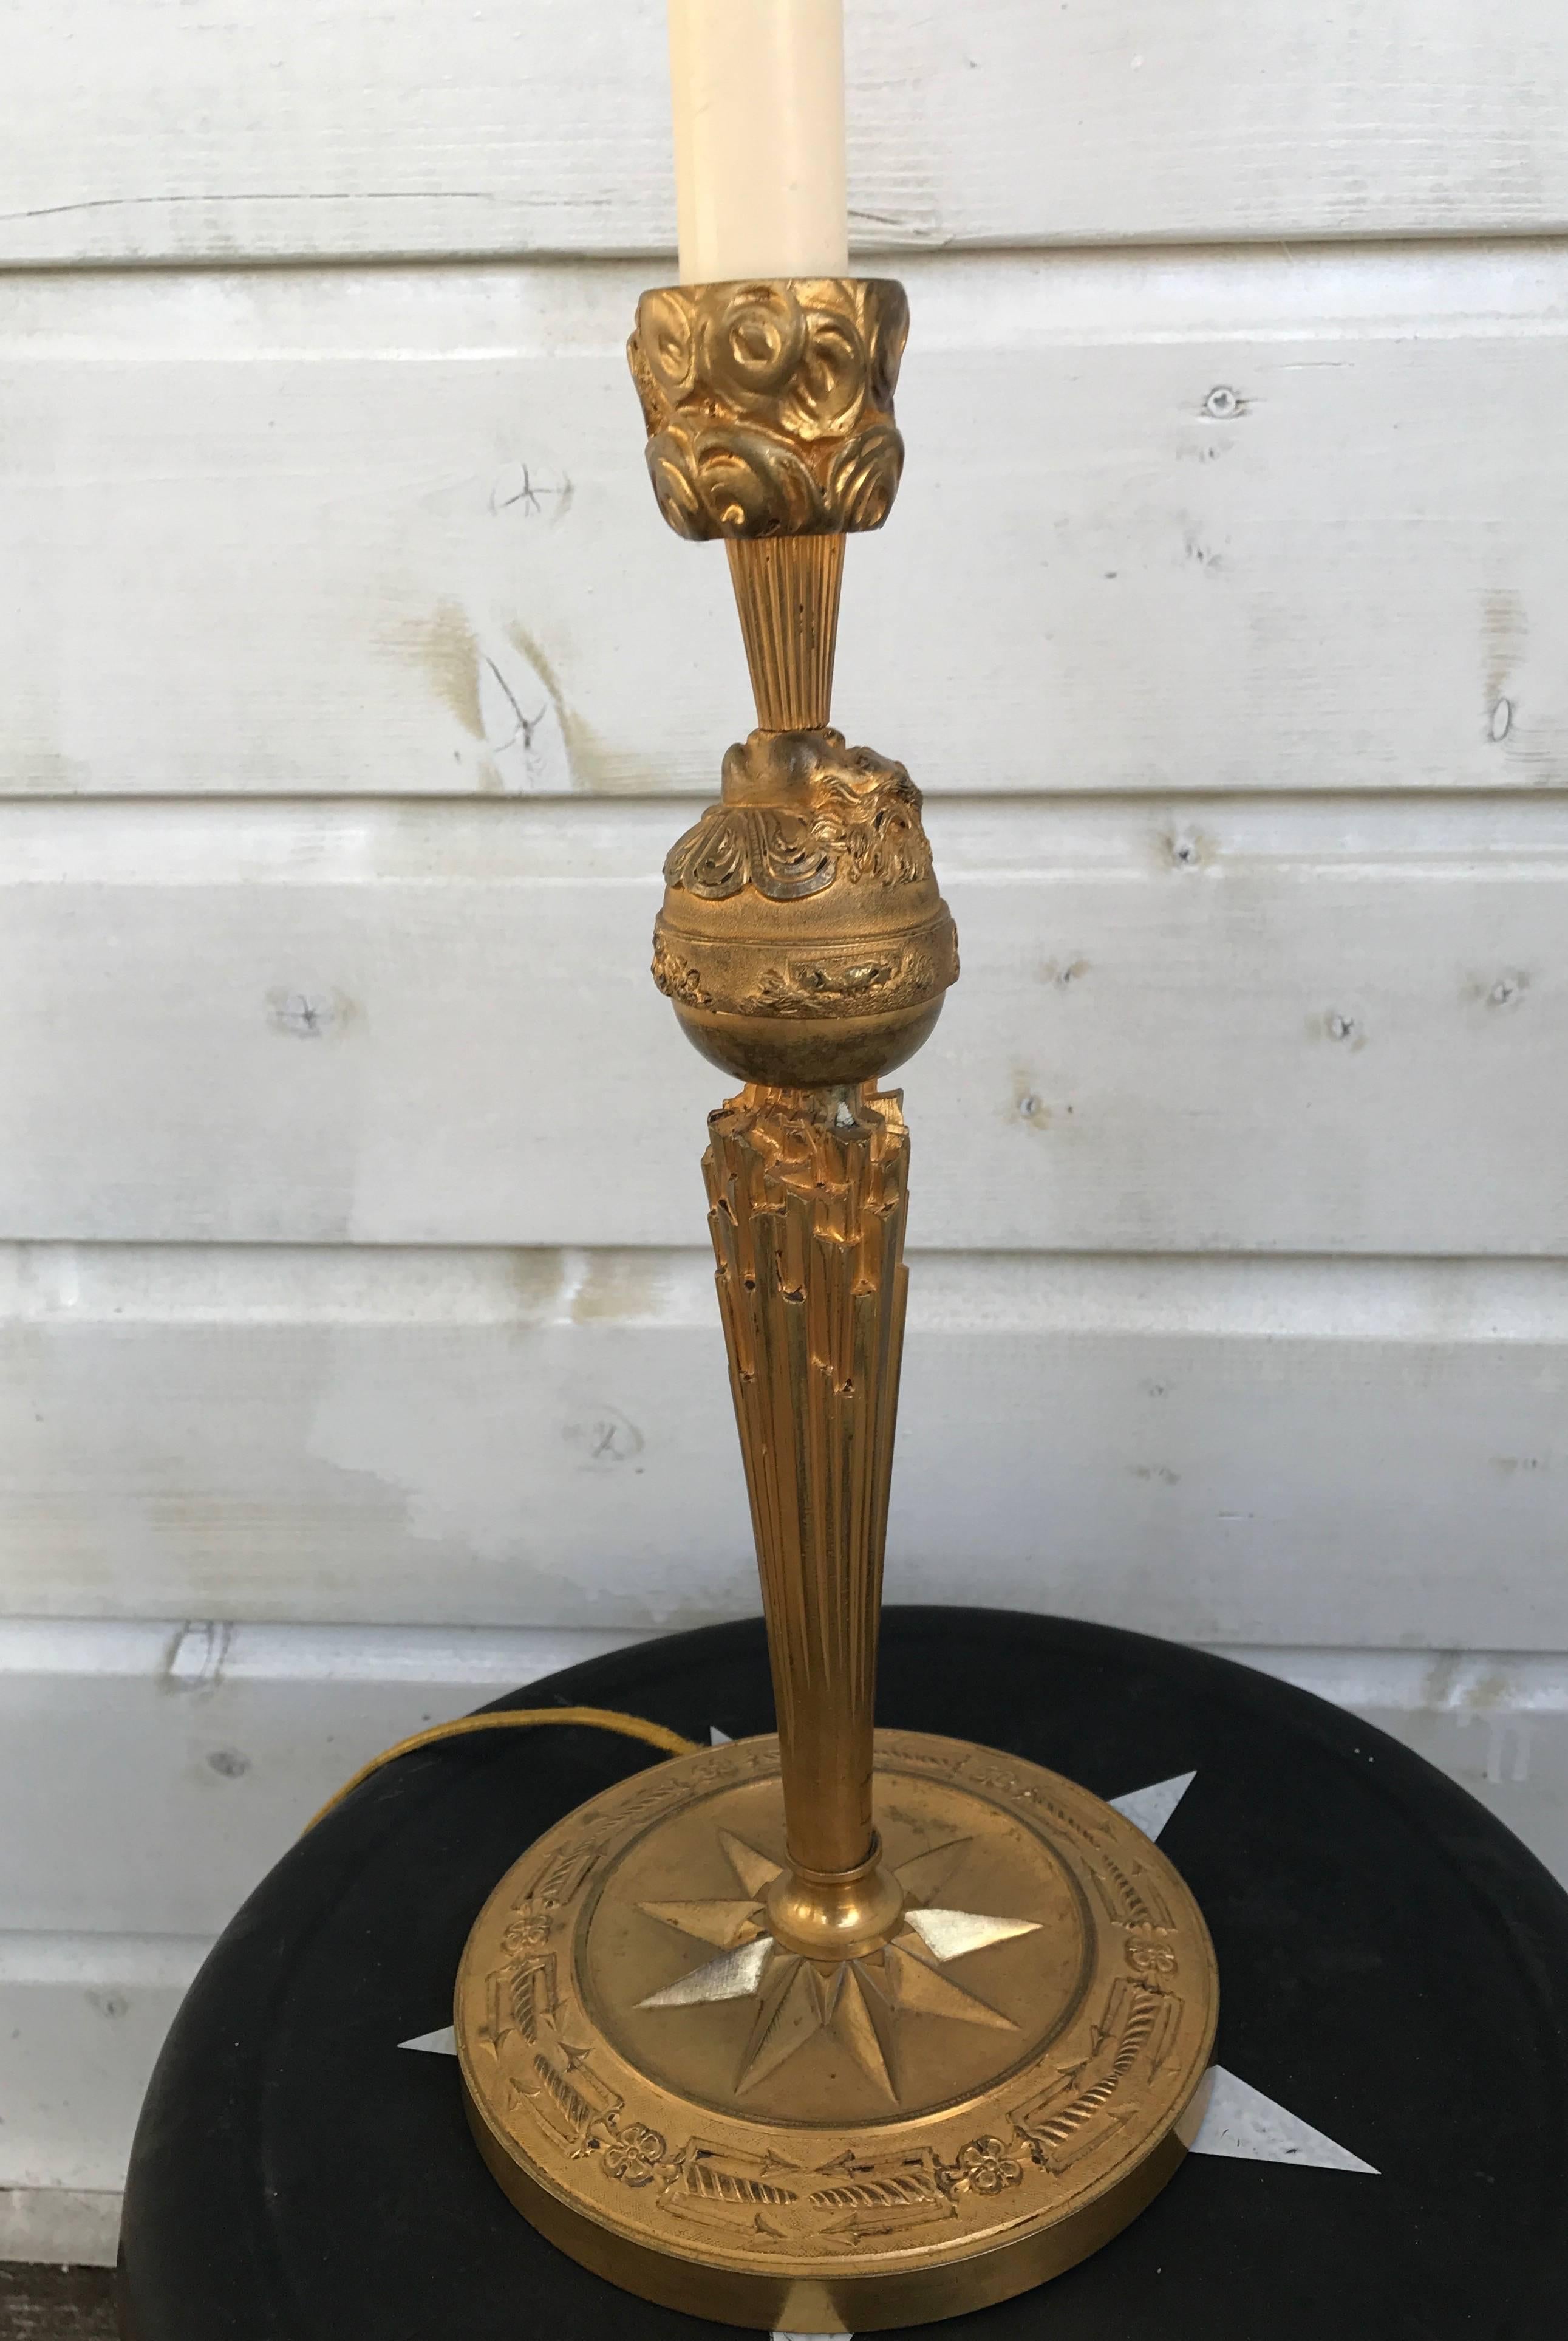 Lampe de table figurative et complexe en bronze.

Cette lampe de table en bronze sculpté et moulé de qualité est magnifiquement dorée et fera une merveilleuse pièce de conversation. La bougie en plastique située entre le socle et la douille a été